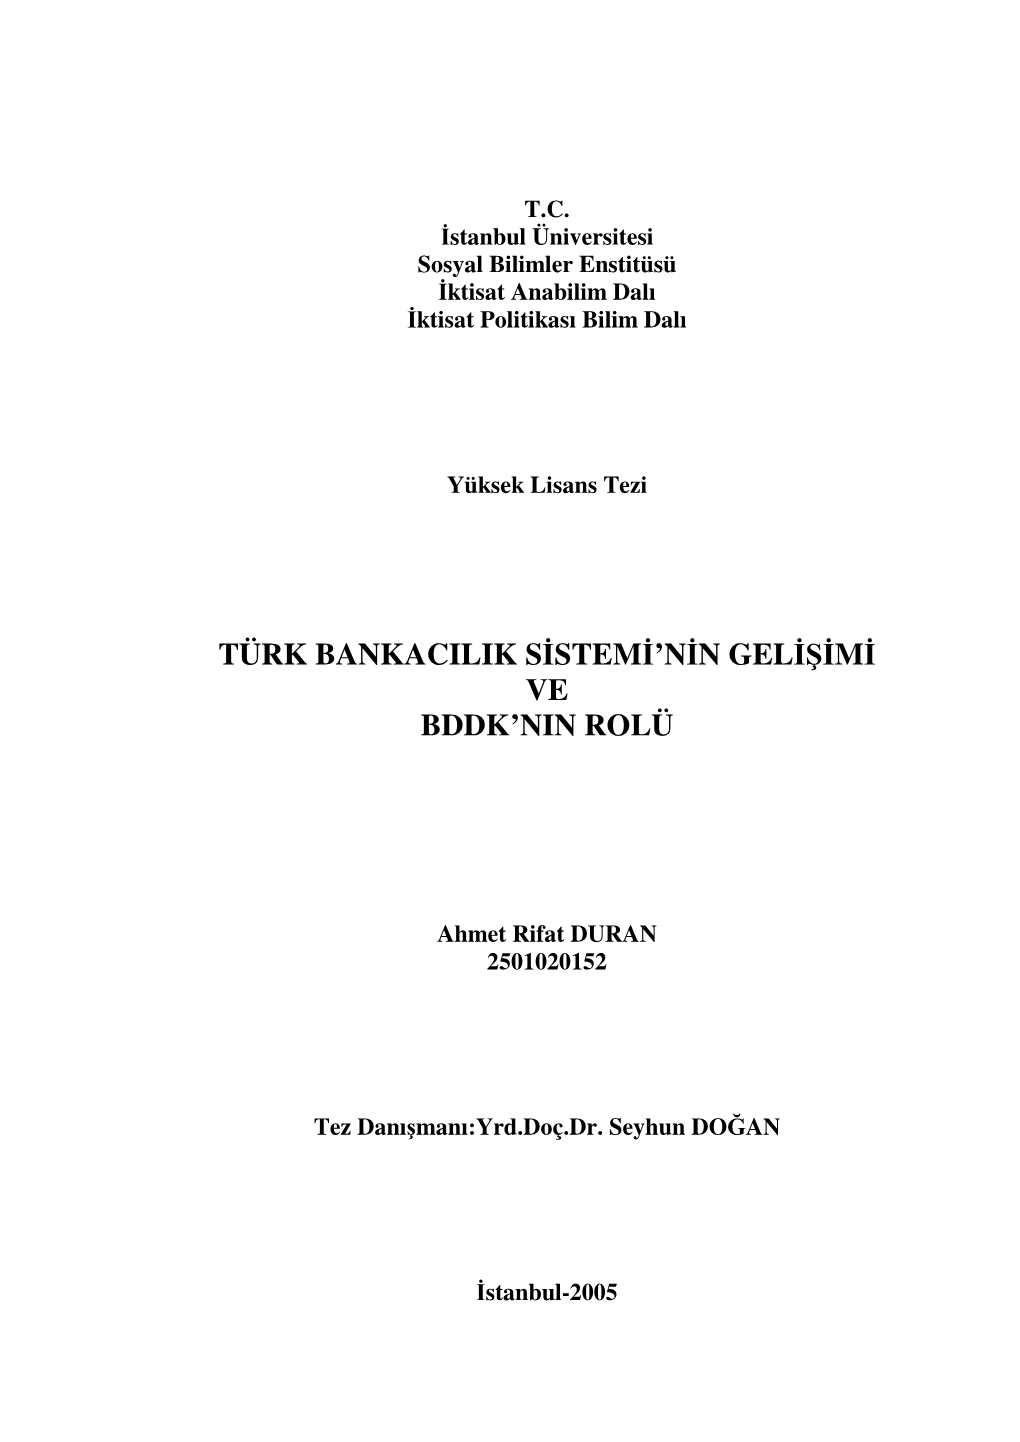 Türk Bankacilik Sistemi'nin Gelişimi Ve Bddk'nin Rolü